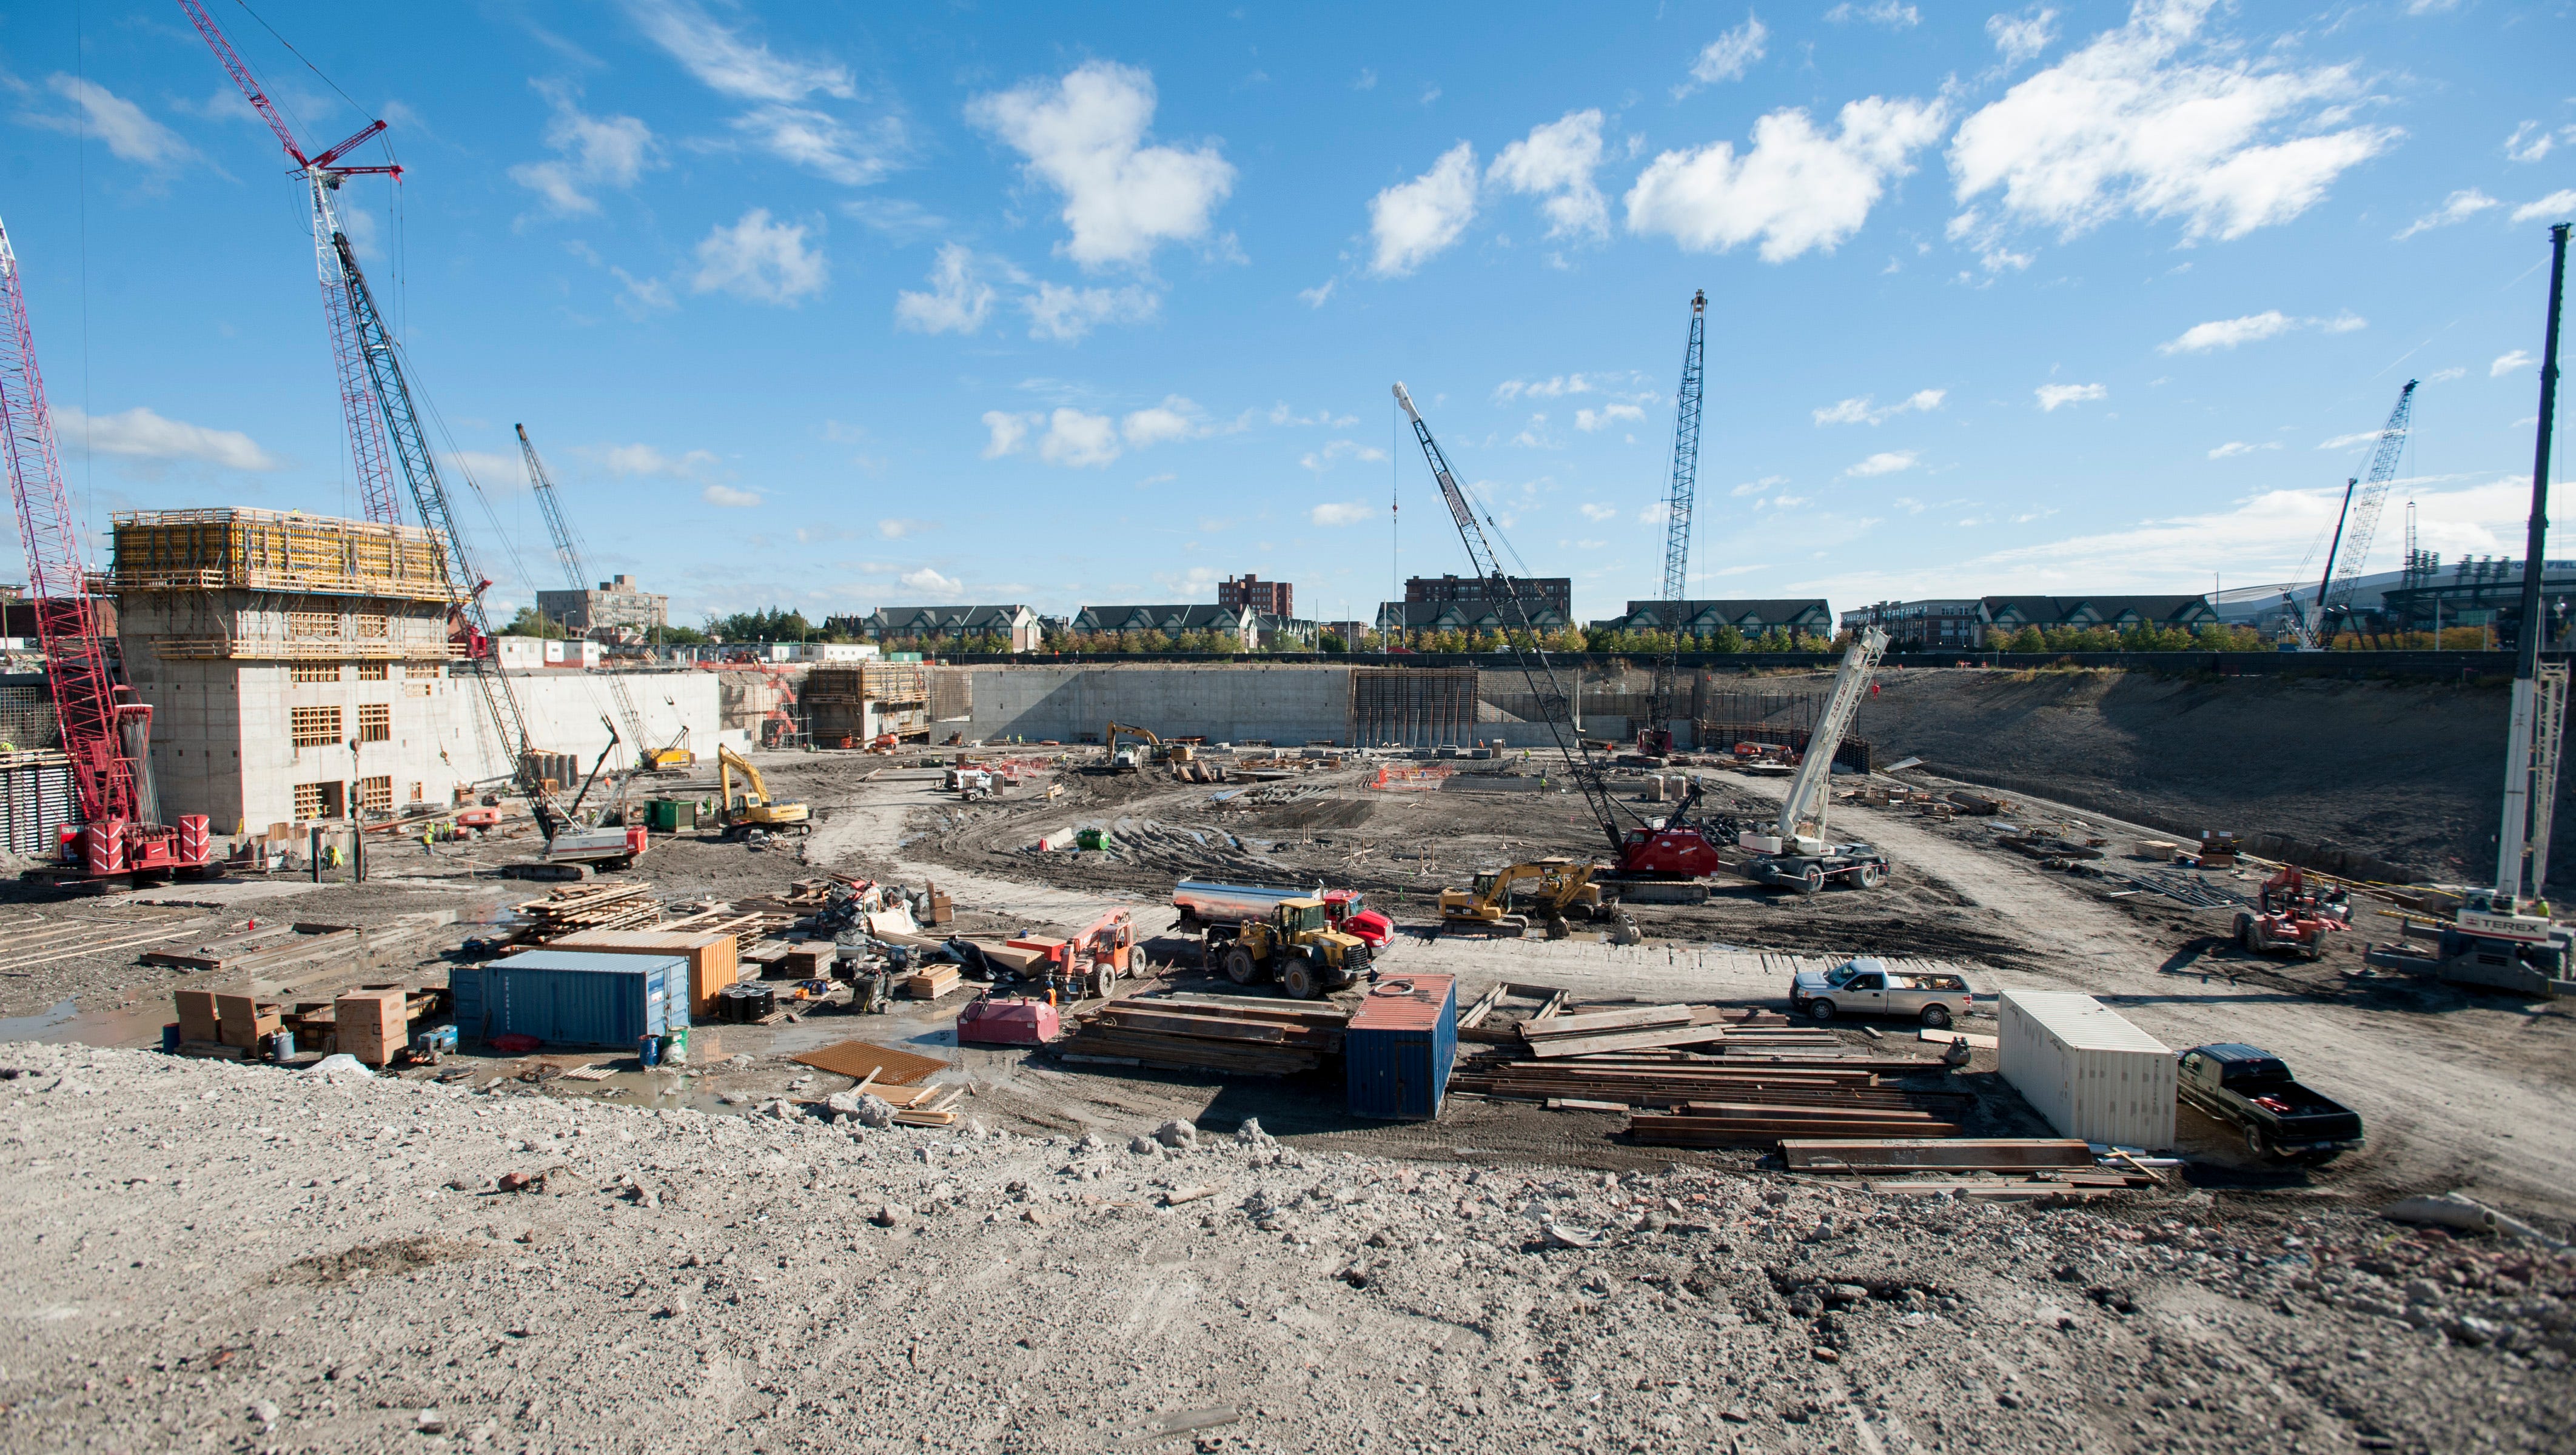 Construction of Little Caesars Arena is underway October 1, 2015.